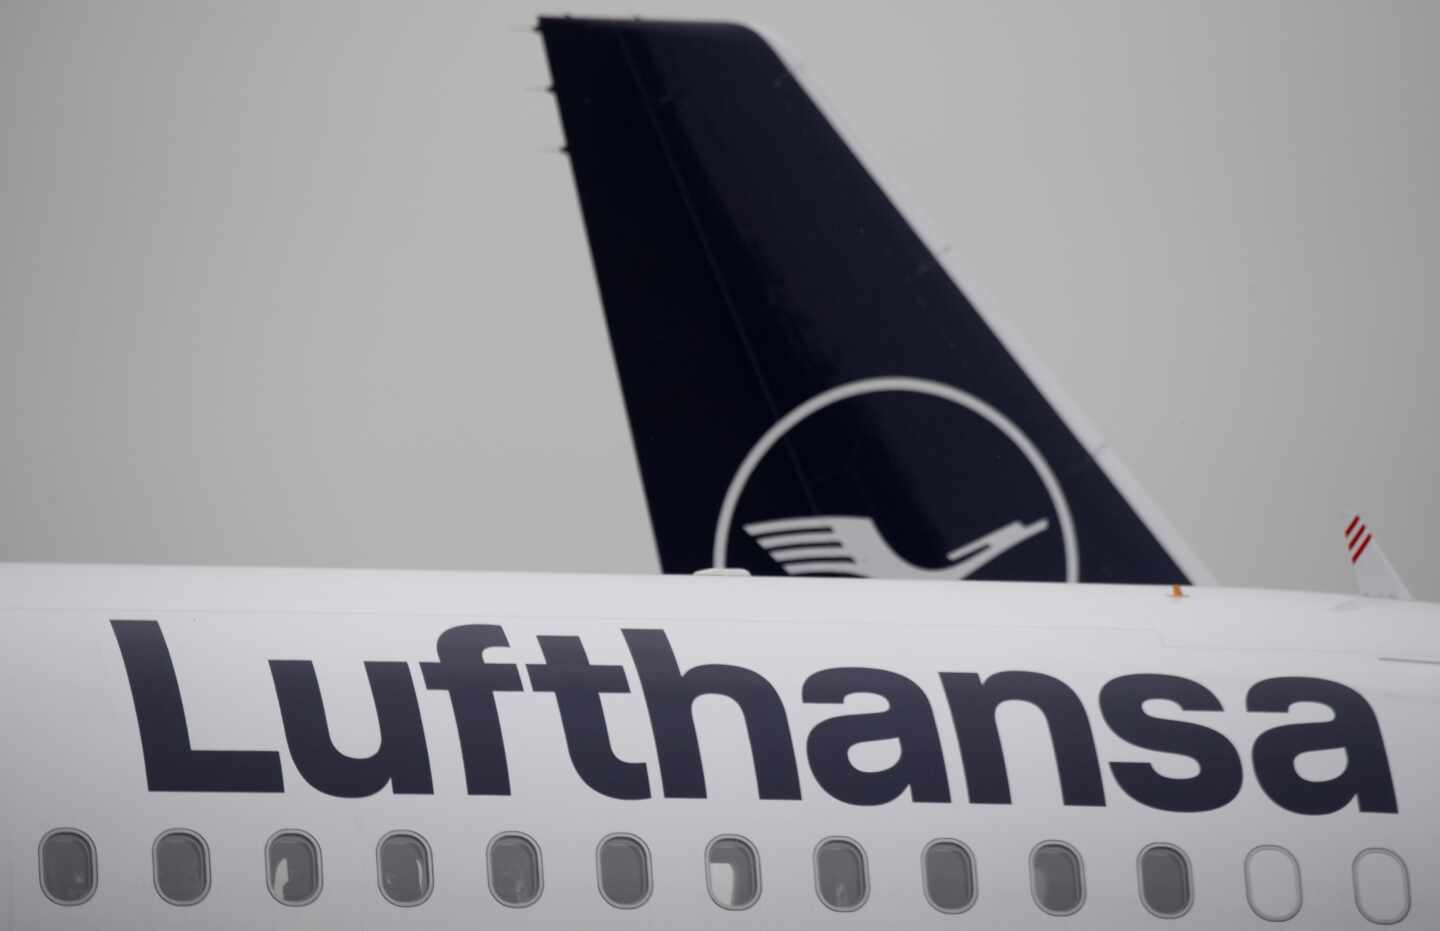 Lufthansa dispara sus números rojos y pierde 2.100 millones en tres meses por el Covid-19